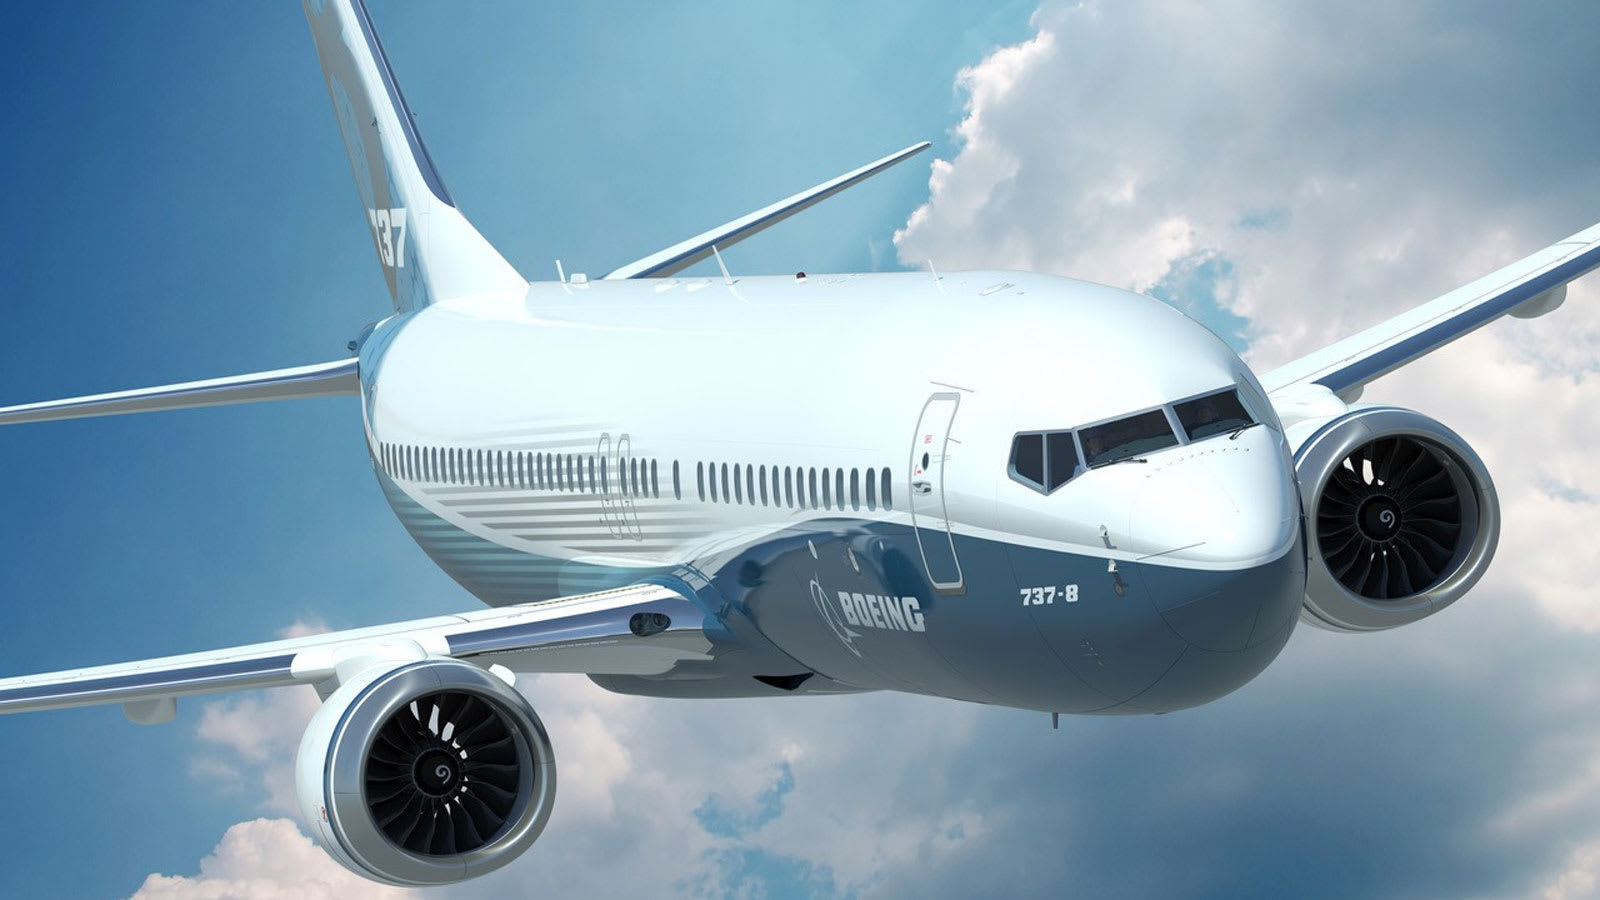 رحلة بوينغ 747 الأخيرة لخطوط "كانتاس" ترسم الكنغر الأيقوني في السماء